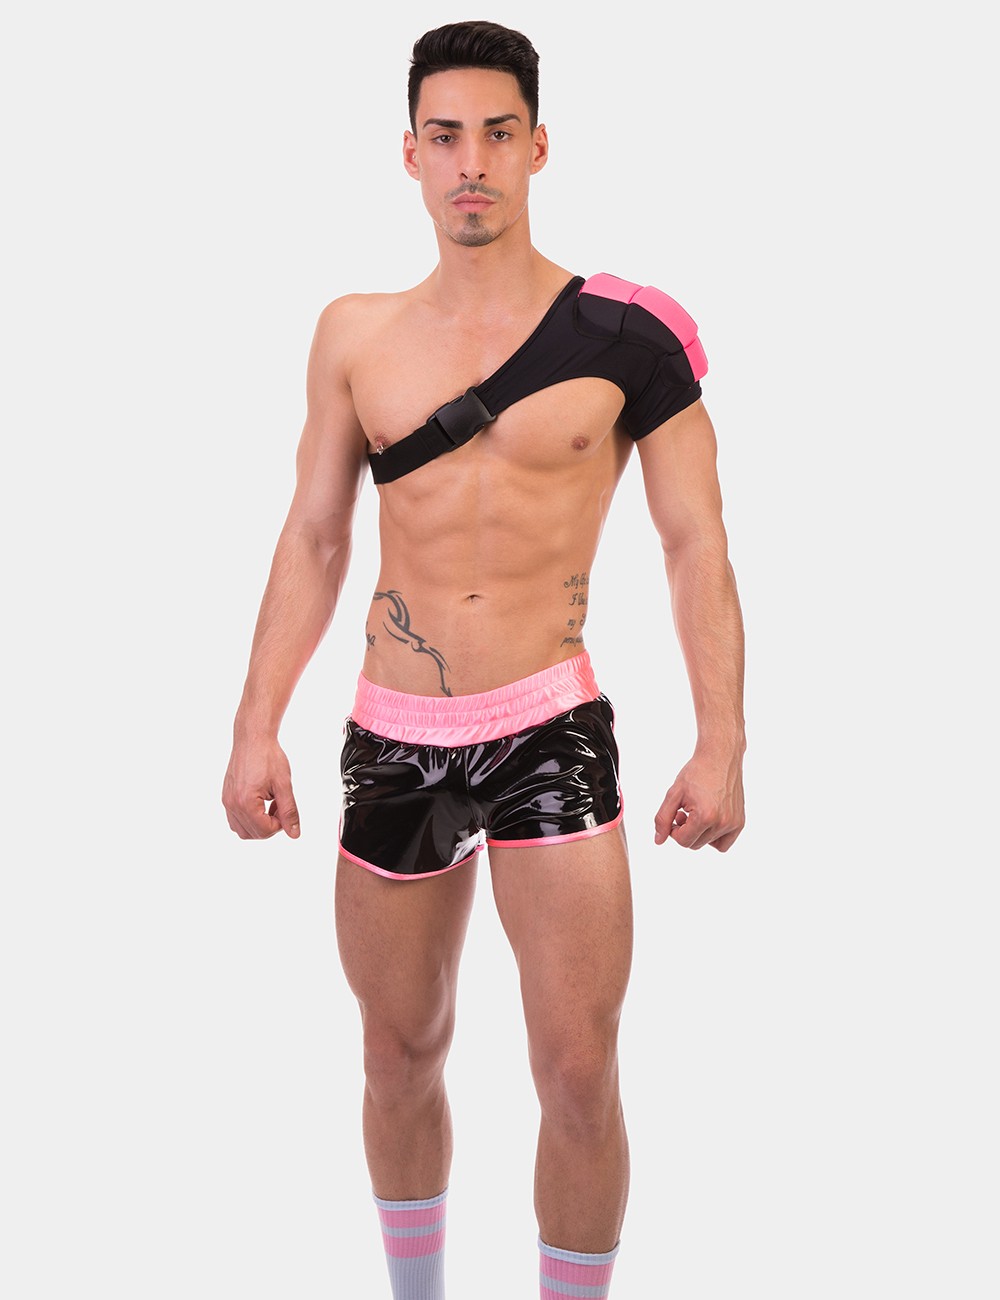 Disco Single Shoulder Pad  von Barcode Berlin Model " Pad "Neonpink im Gaywear Fetisch Style 